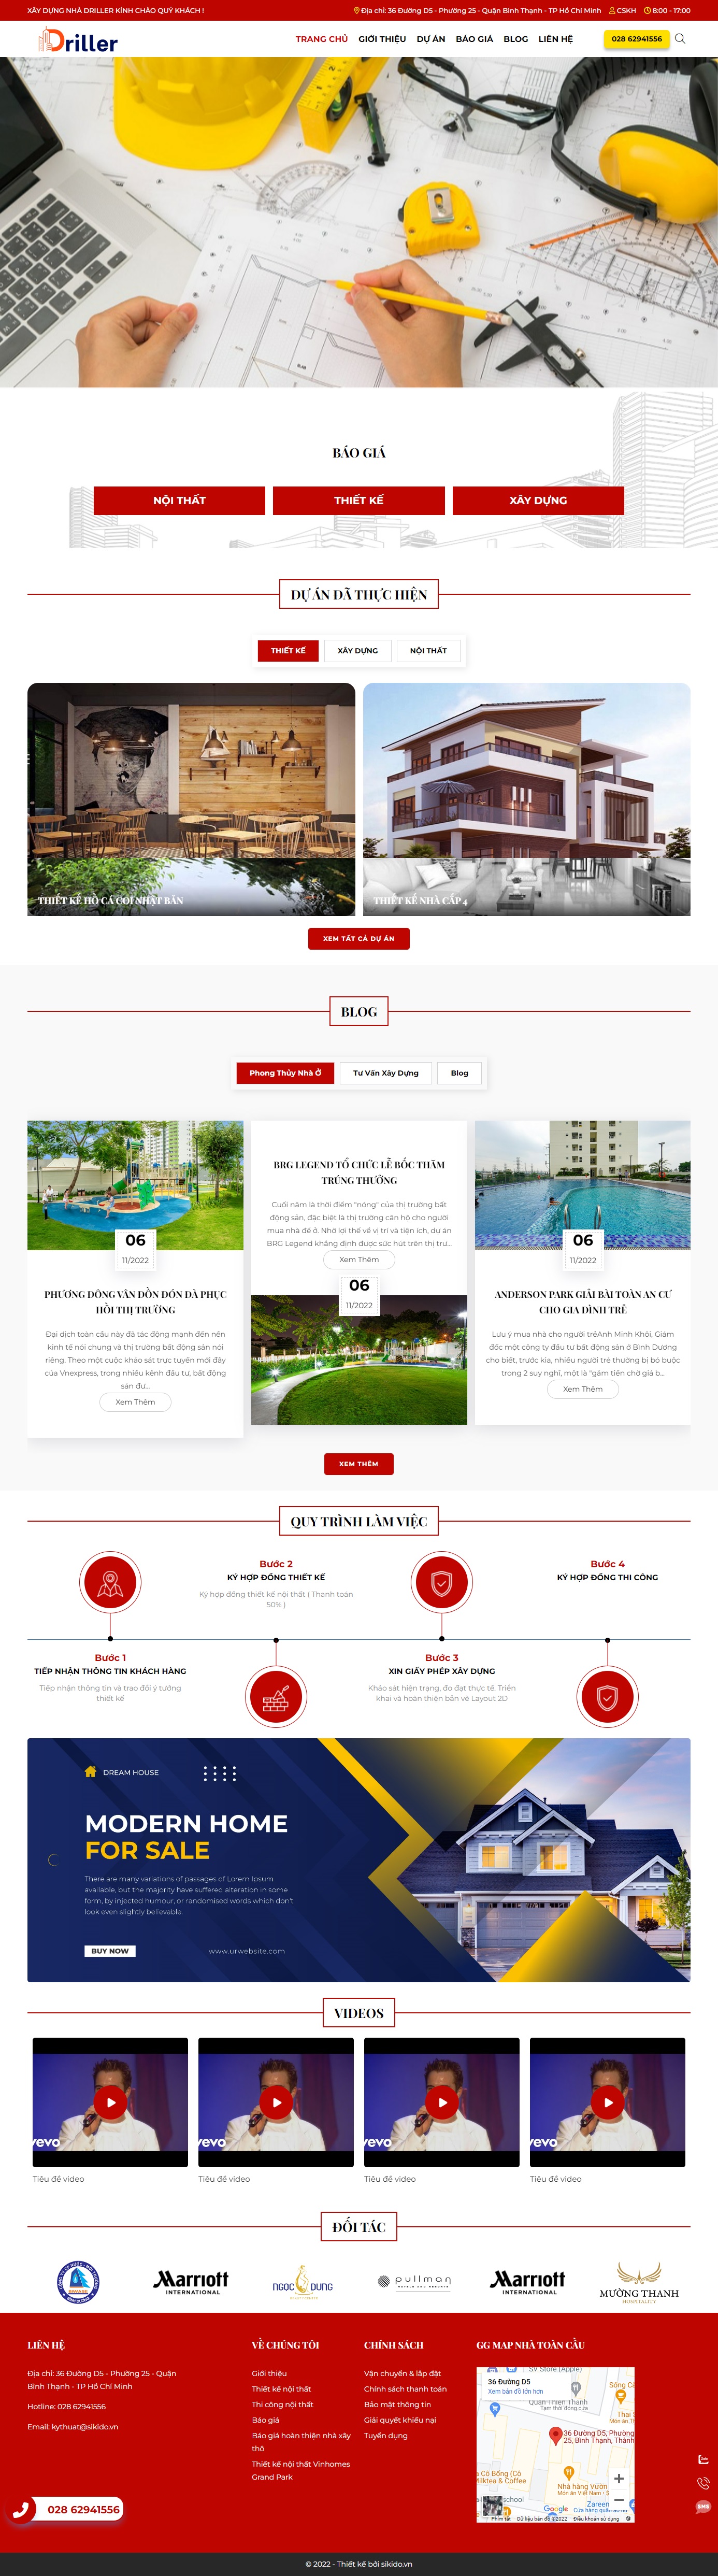 Thiết kế website cho Homestay ở Sài Gòn: Bước đột phá để tăng doanh thu